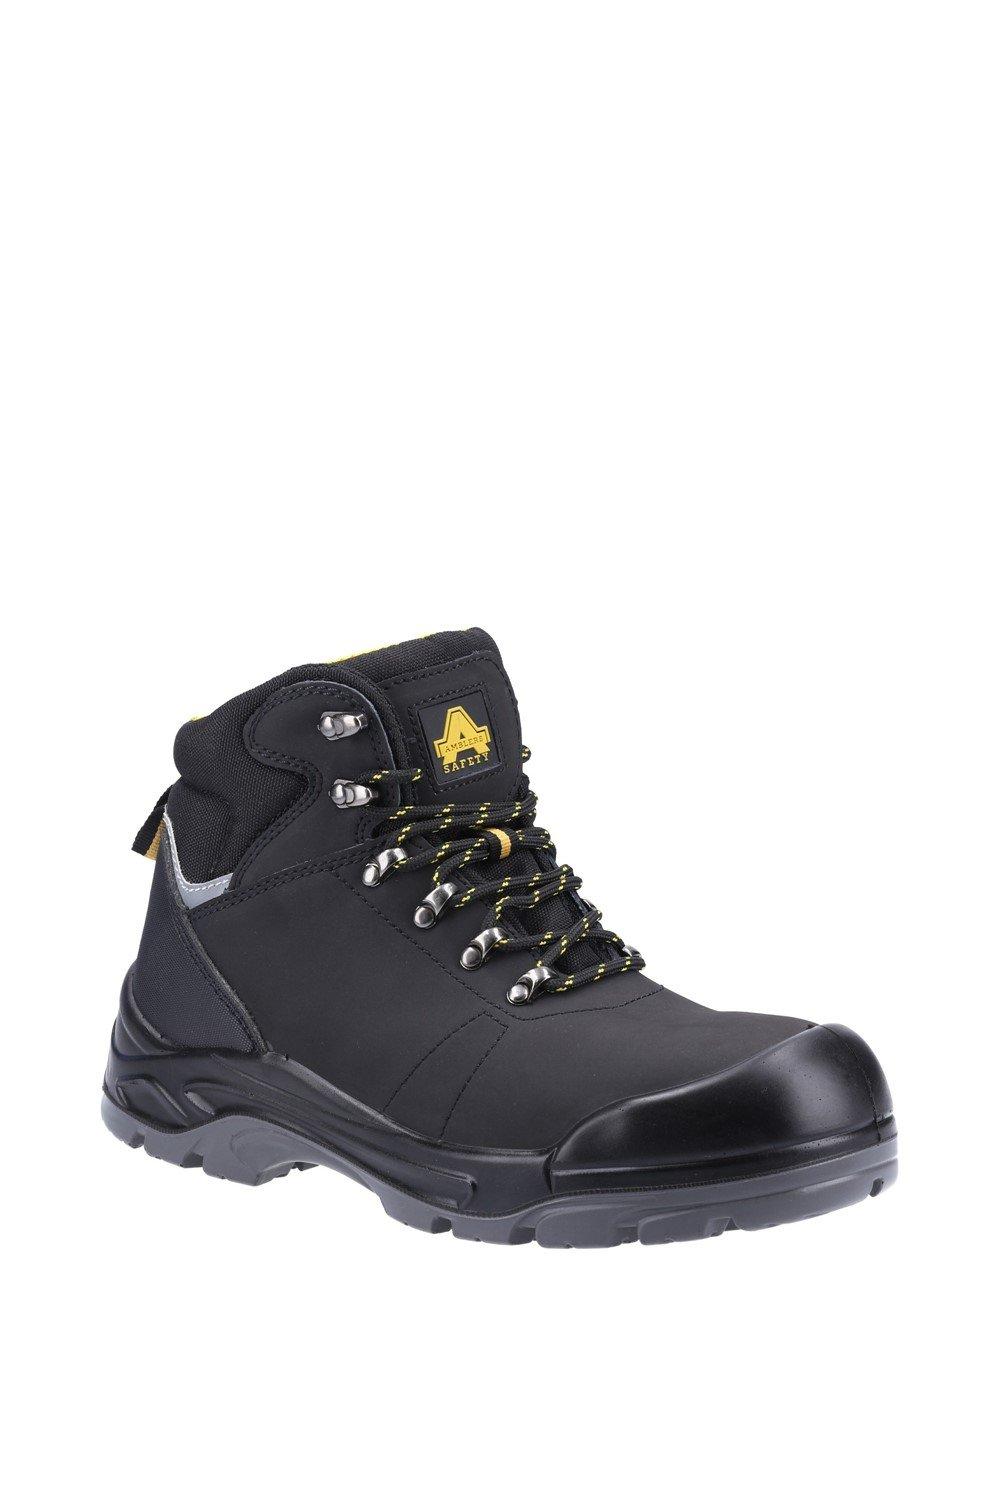 Защитные ботинки AS252 Amblers Safety, черный мужские нескользящие кроссовки легкие дышащие защитные рабочие ботинки со стальным носком сетчатые защитные ботинки новинка 2022